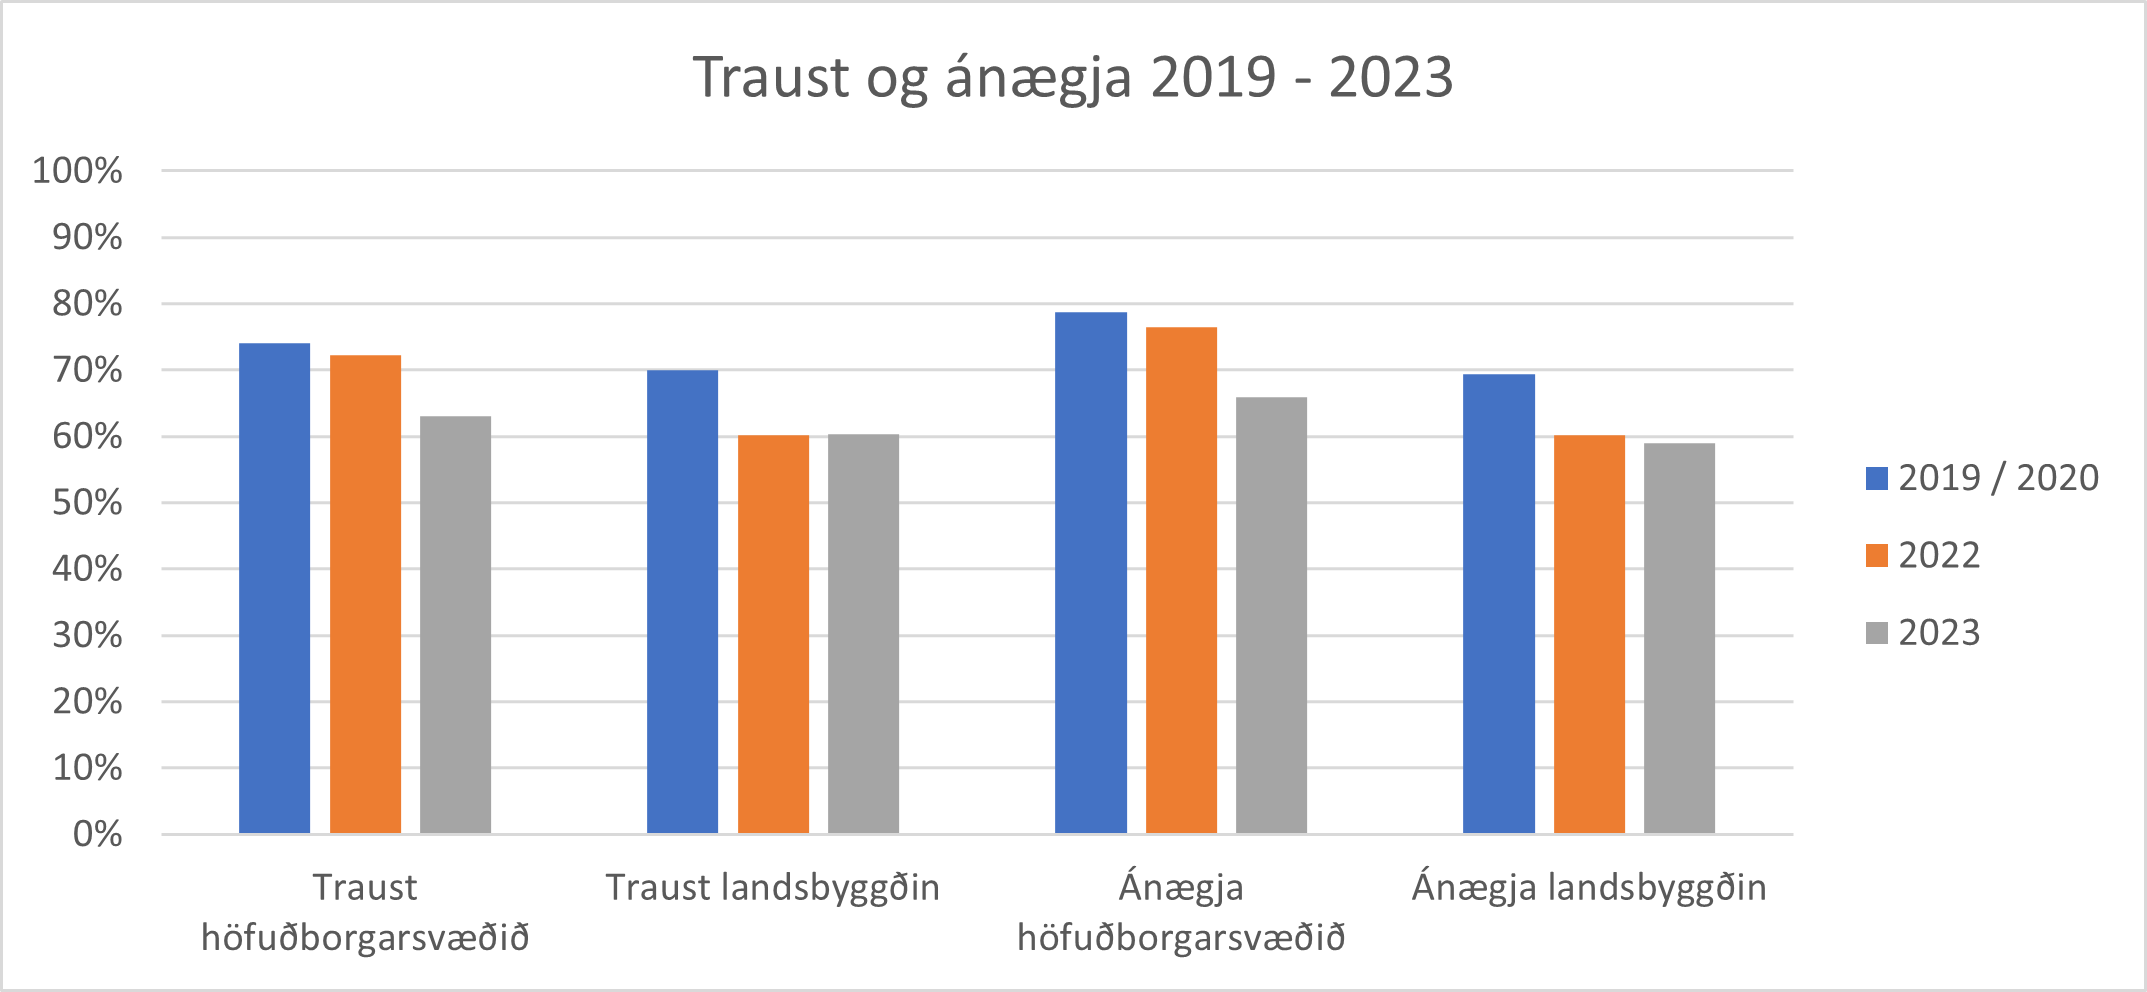 Traust og ánægja 2019 - 2023